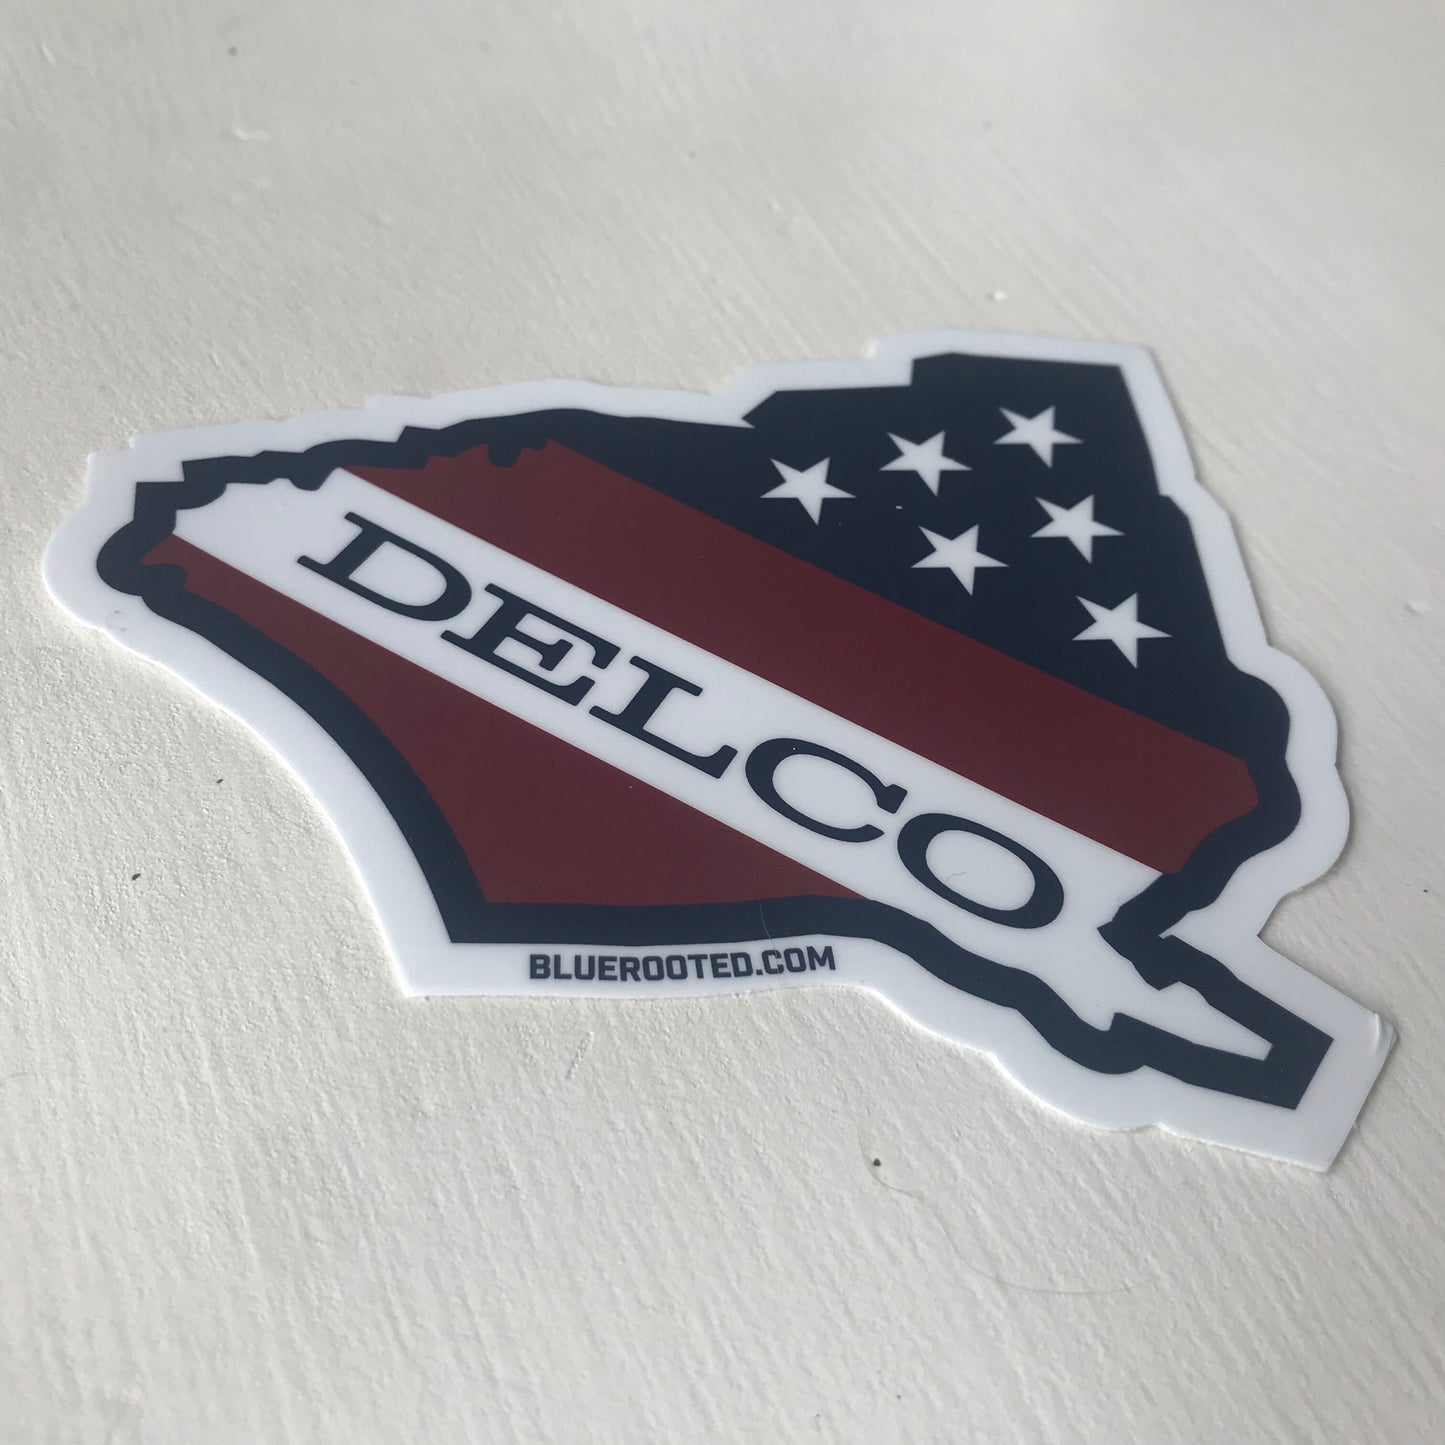 DELCO Stars & Stripes Sticker